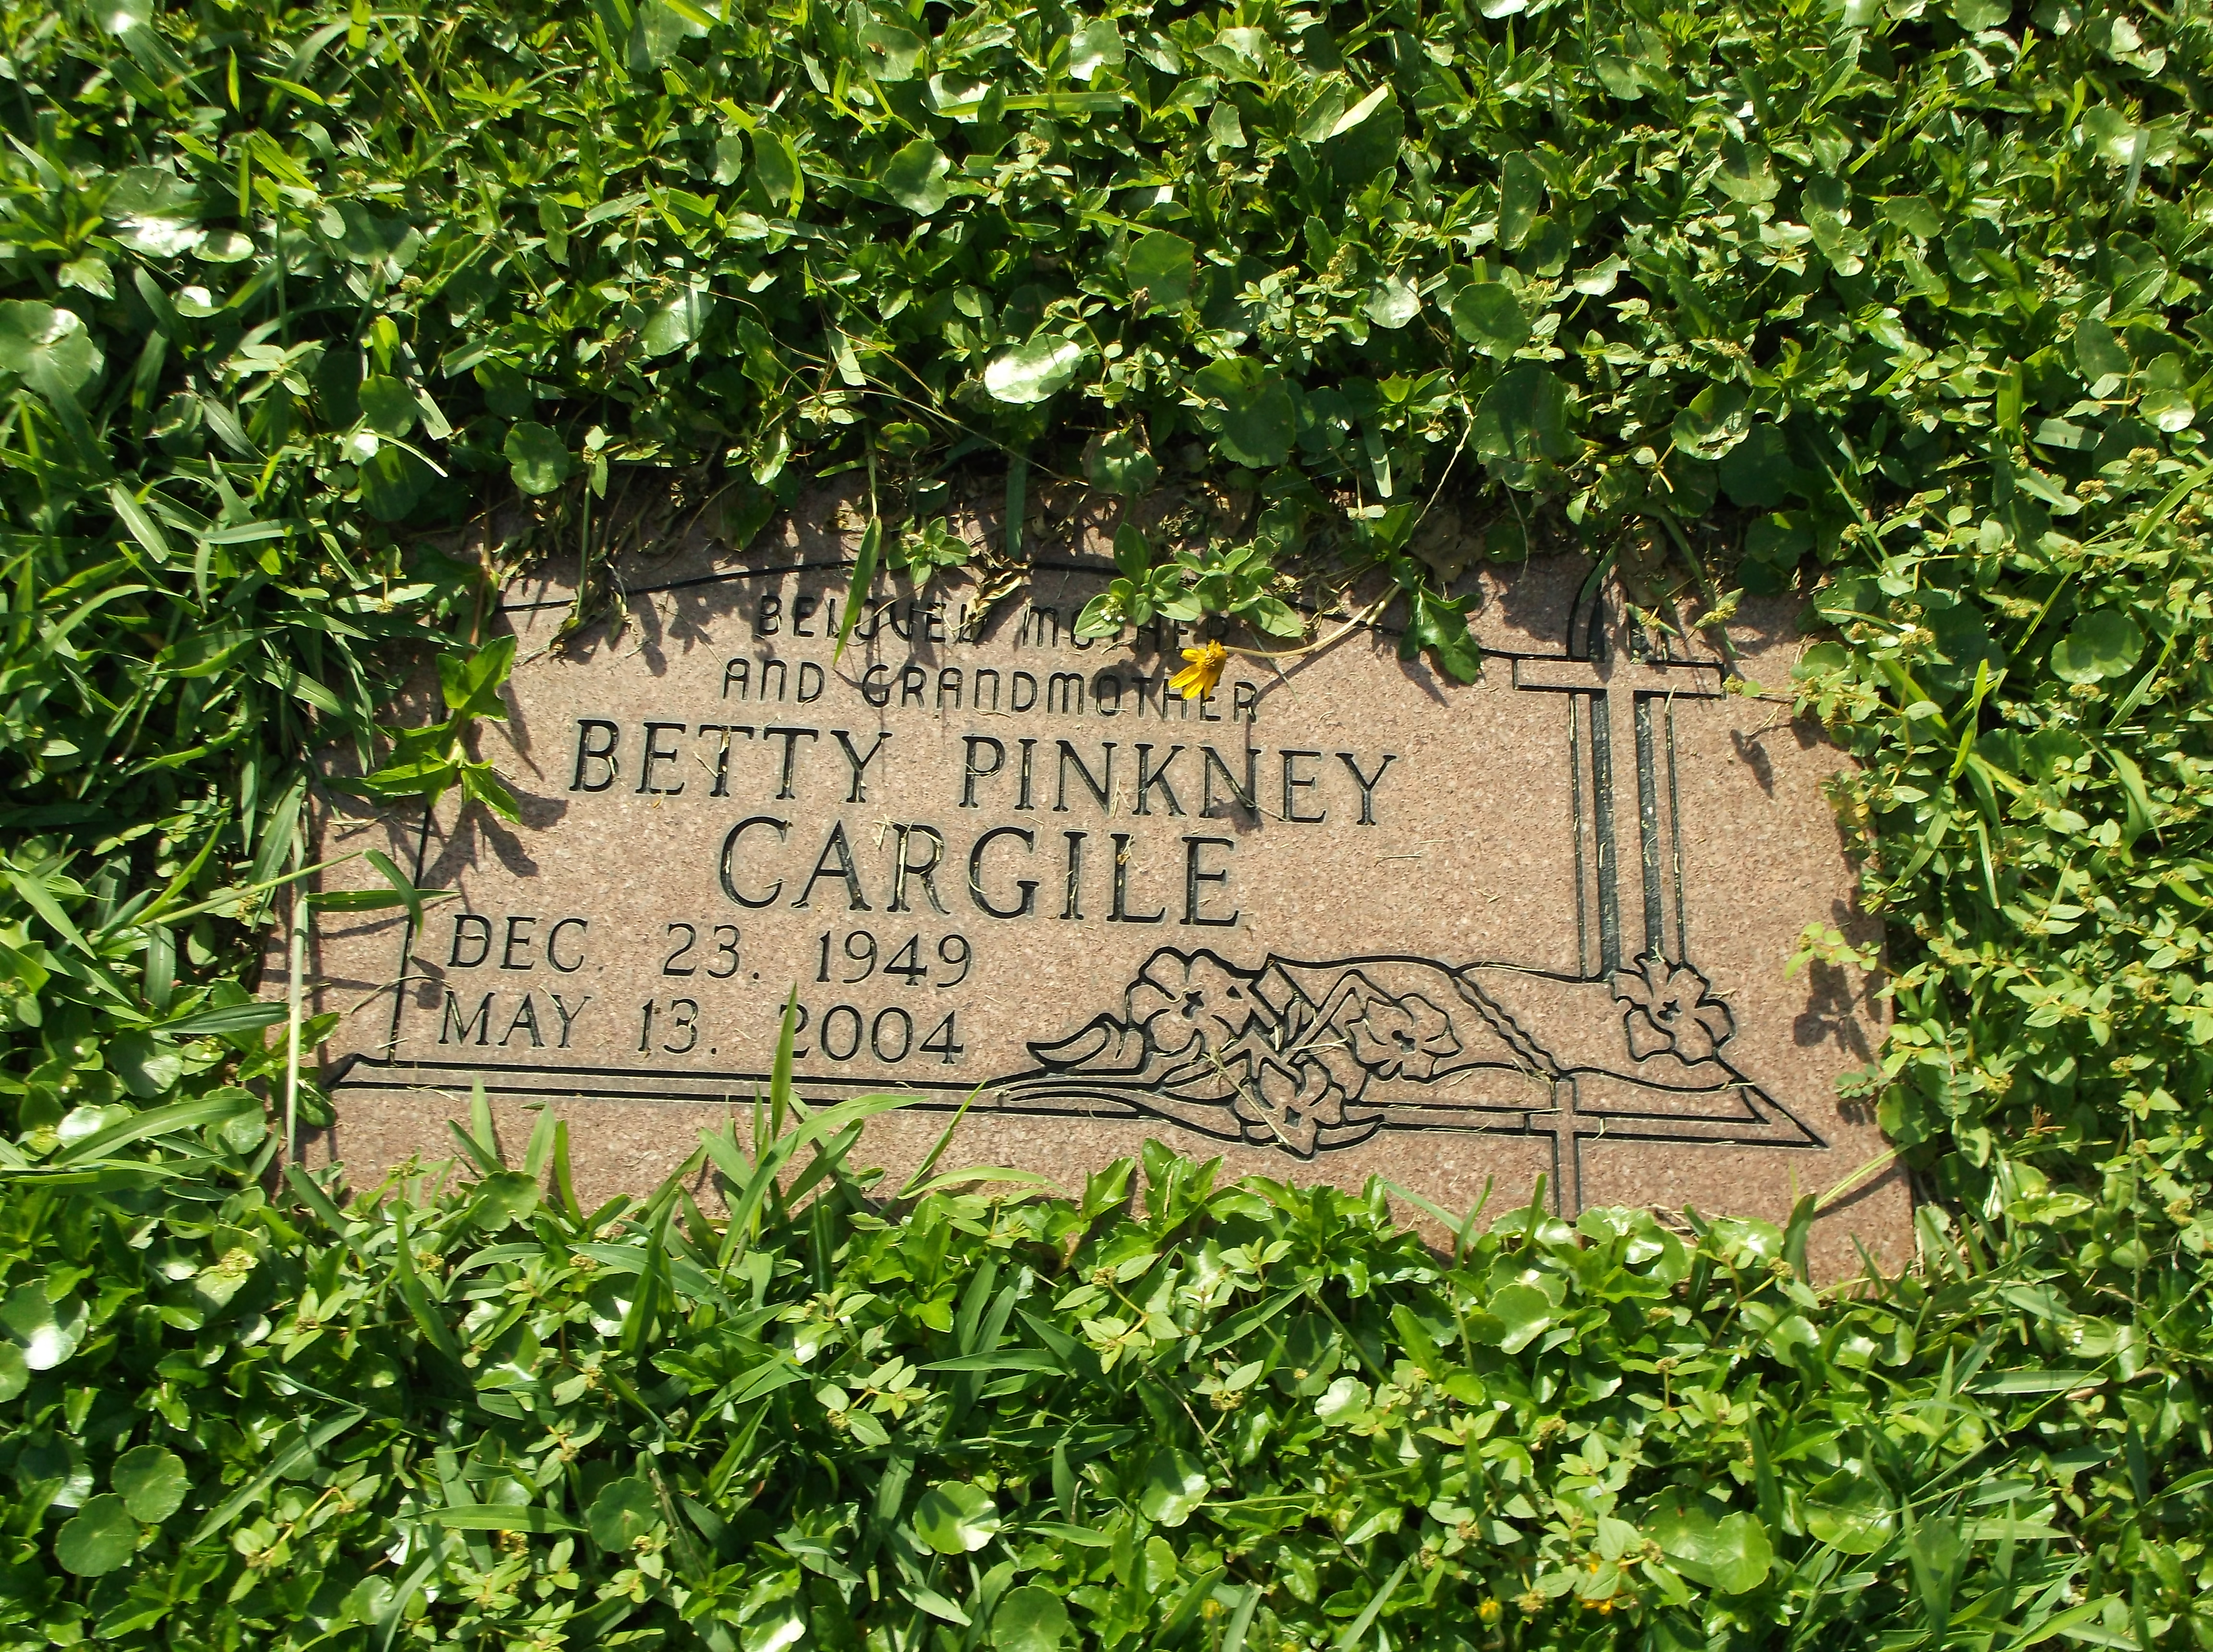 Betty Pinkney Cargile